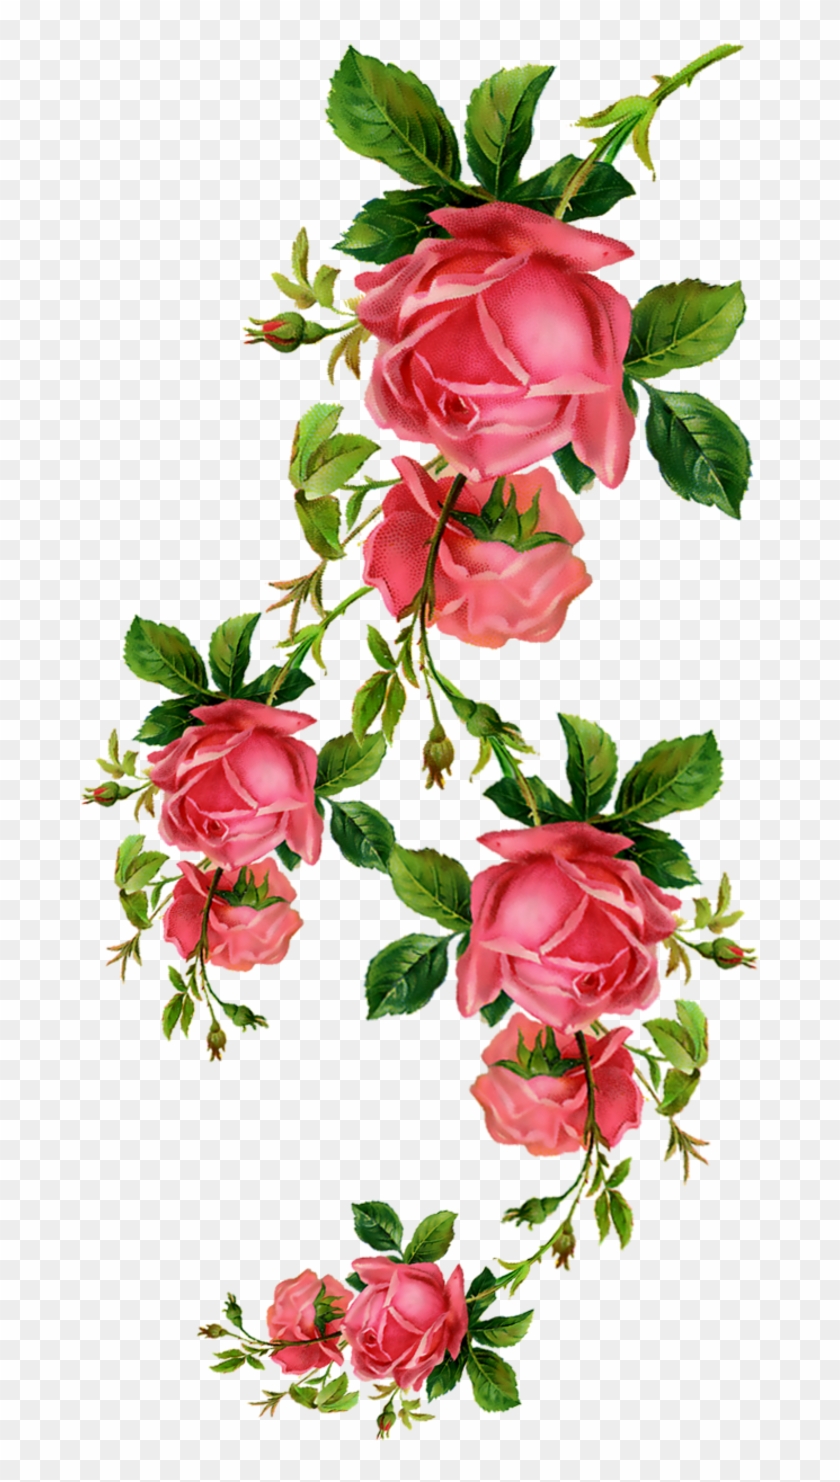 Flower Rose Blume Clip Art - Flower Rose Blume Clip Art #370783